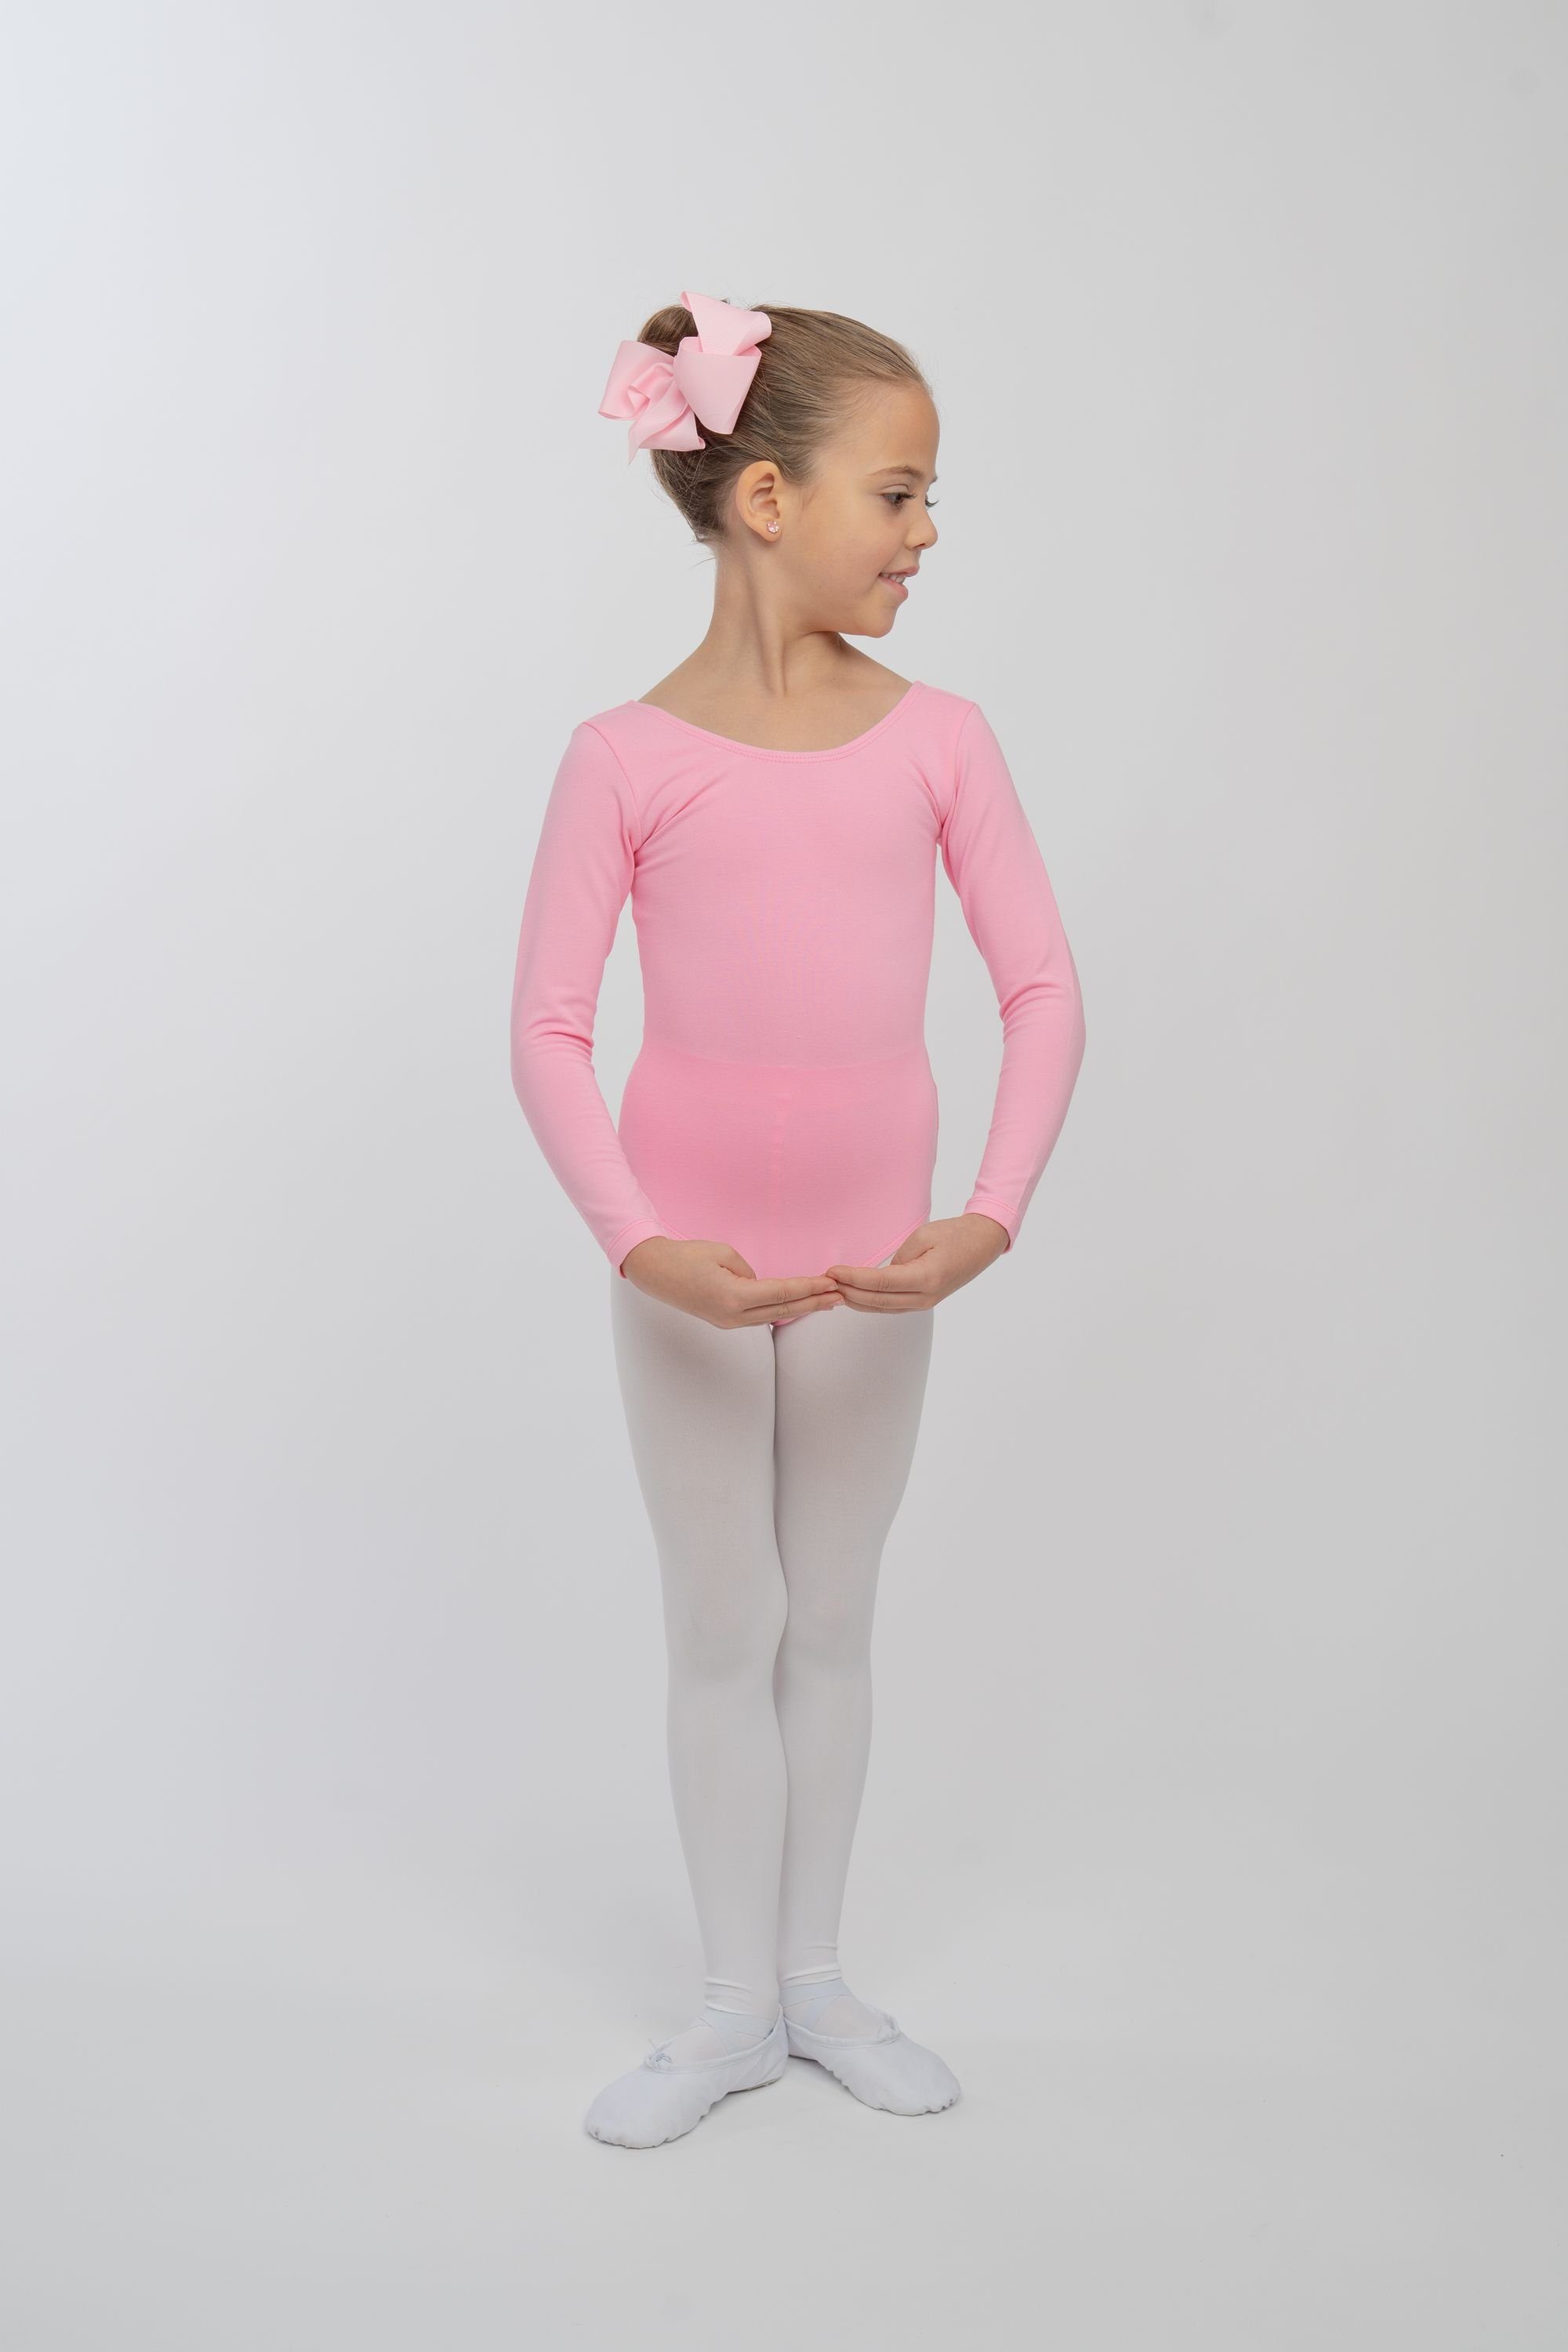 Ballettbody Kinder aus Trikot Baumwollmischgewebe Lilly Langarm rosa weichem Body tanzmuster fürs Ballett